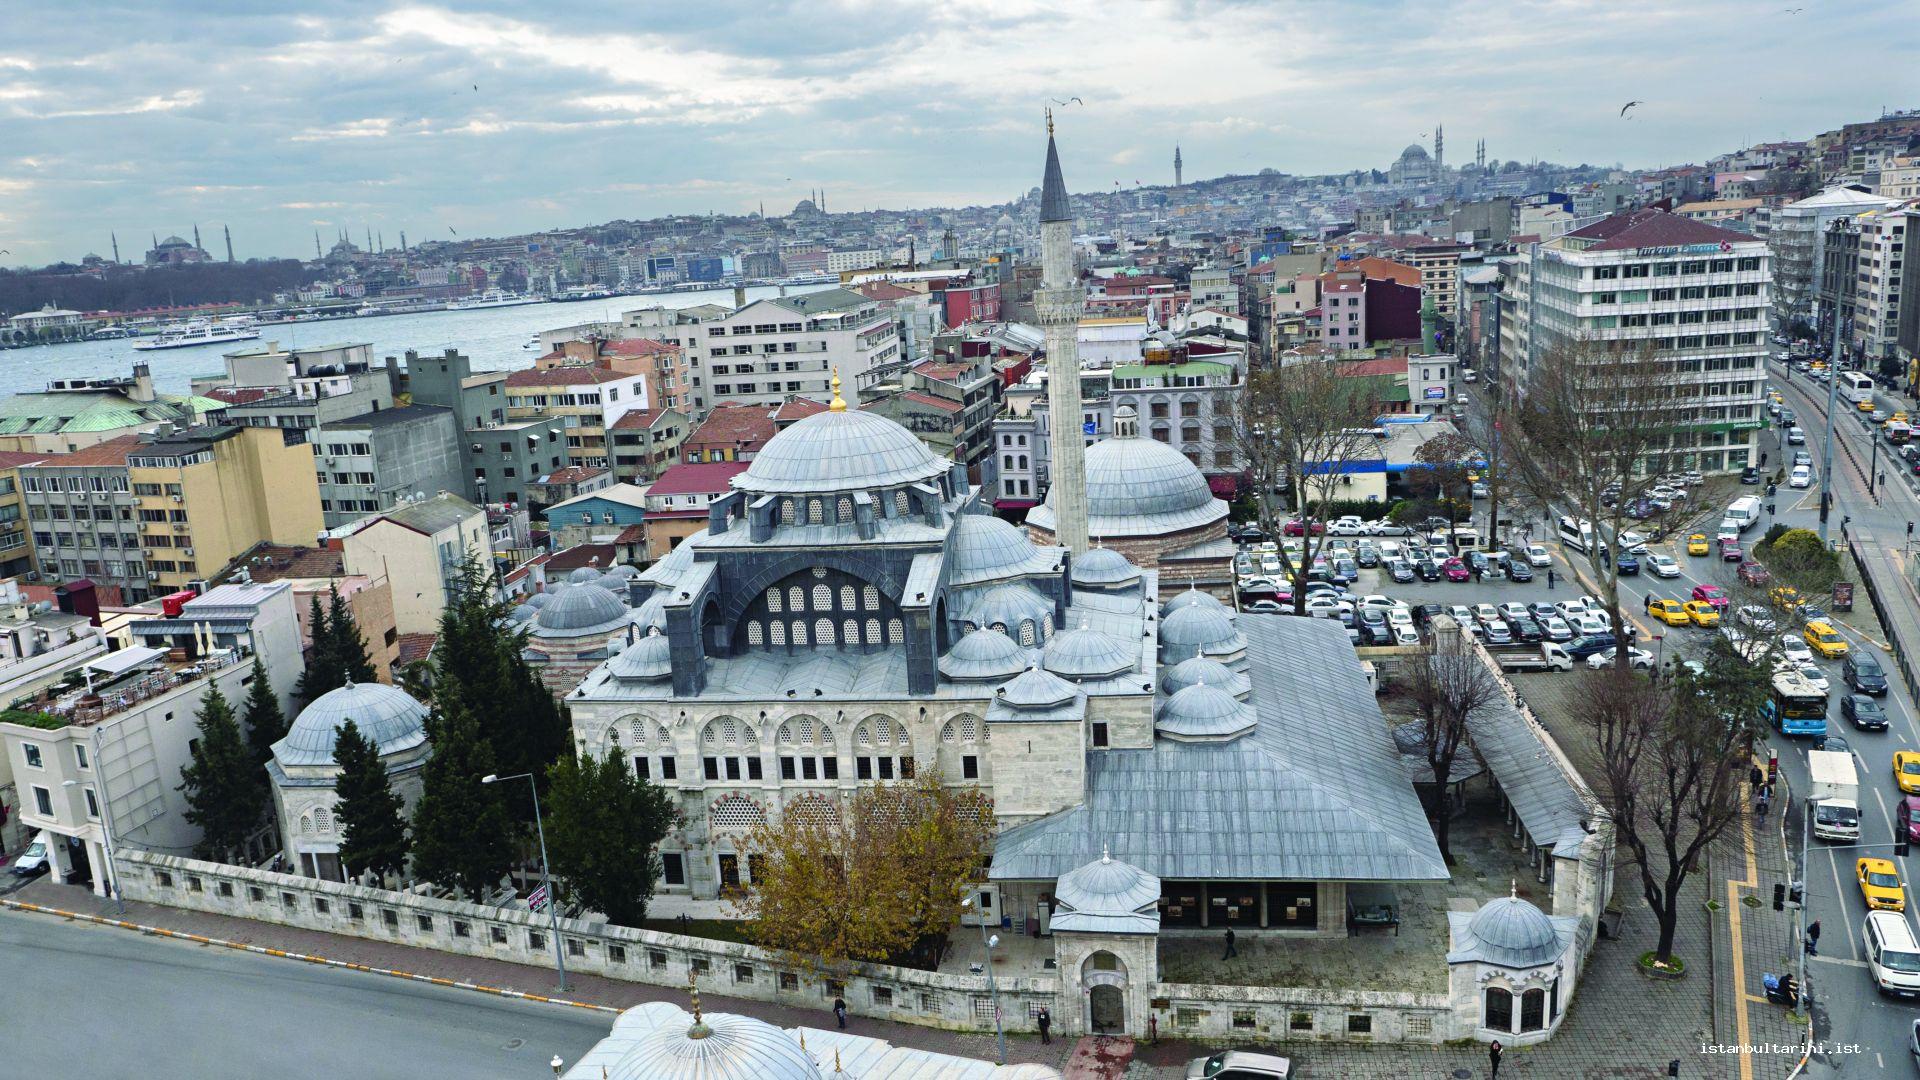 29- Kılıç Ali Paşa Complex